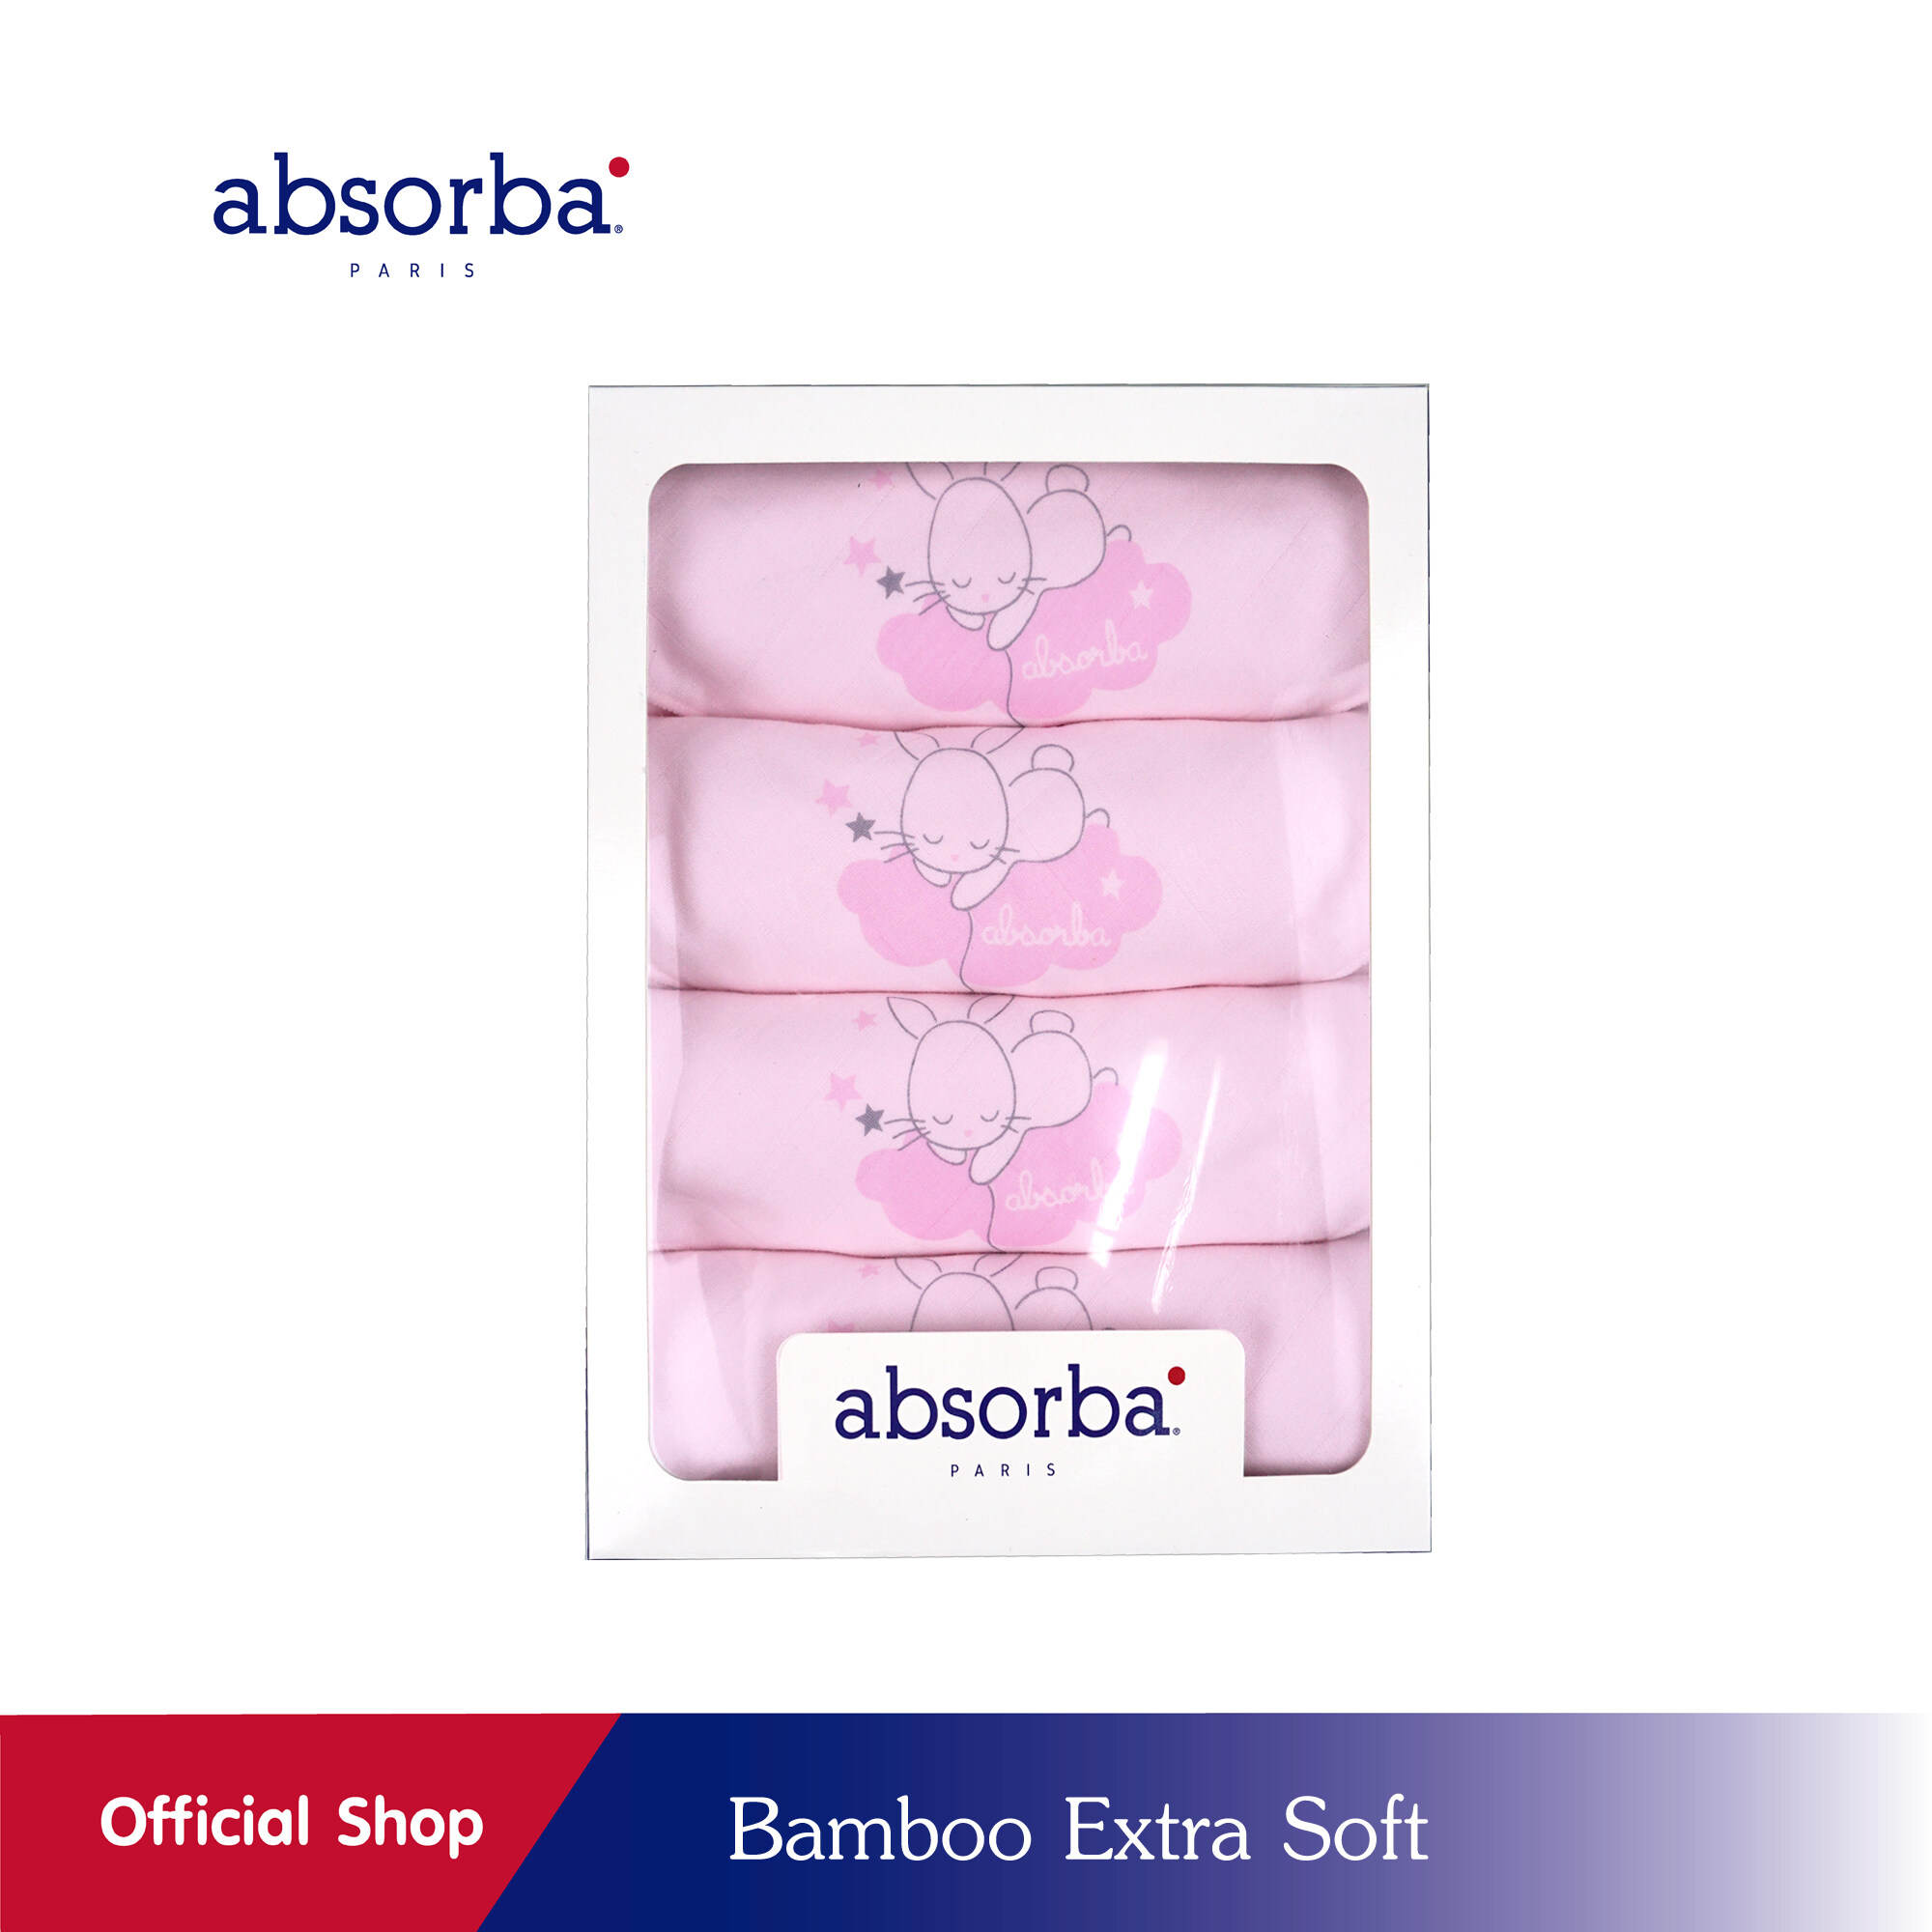 absorba(แอ็บซอร์บา)ผ้าอ้อมเยื่อไผ่ Bamboo Extra Soft นุ่ม ลื่น สัมผัสเย็น ยับยั้งแบคทีเรีย ขนาด 30x30 นิ้ว ลายกระต่าย สีชมพู แพ็ค 4 ผืน - R6G142PI00